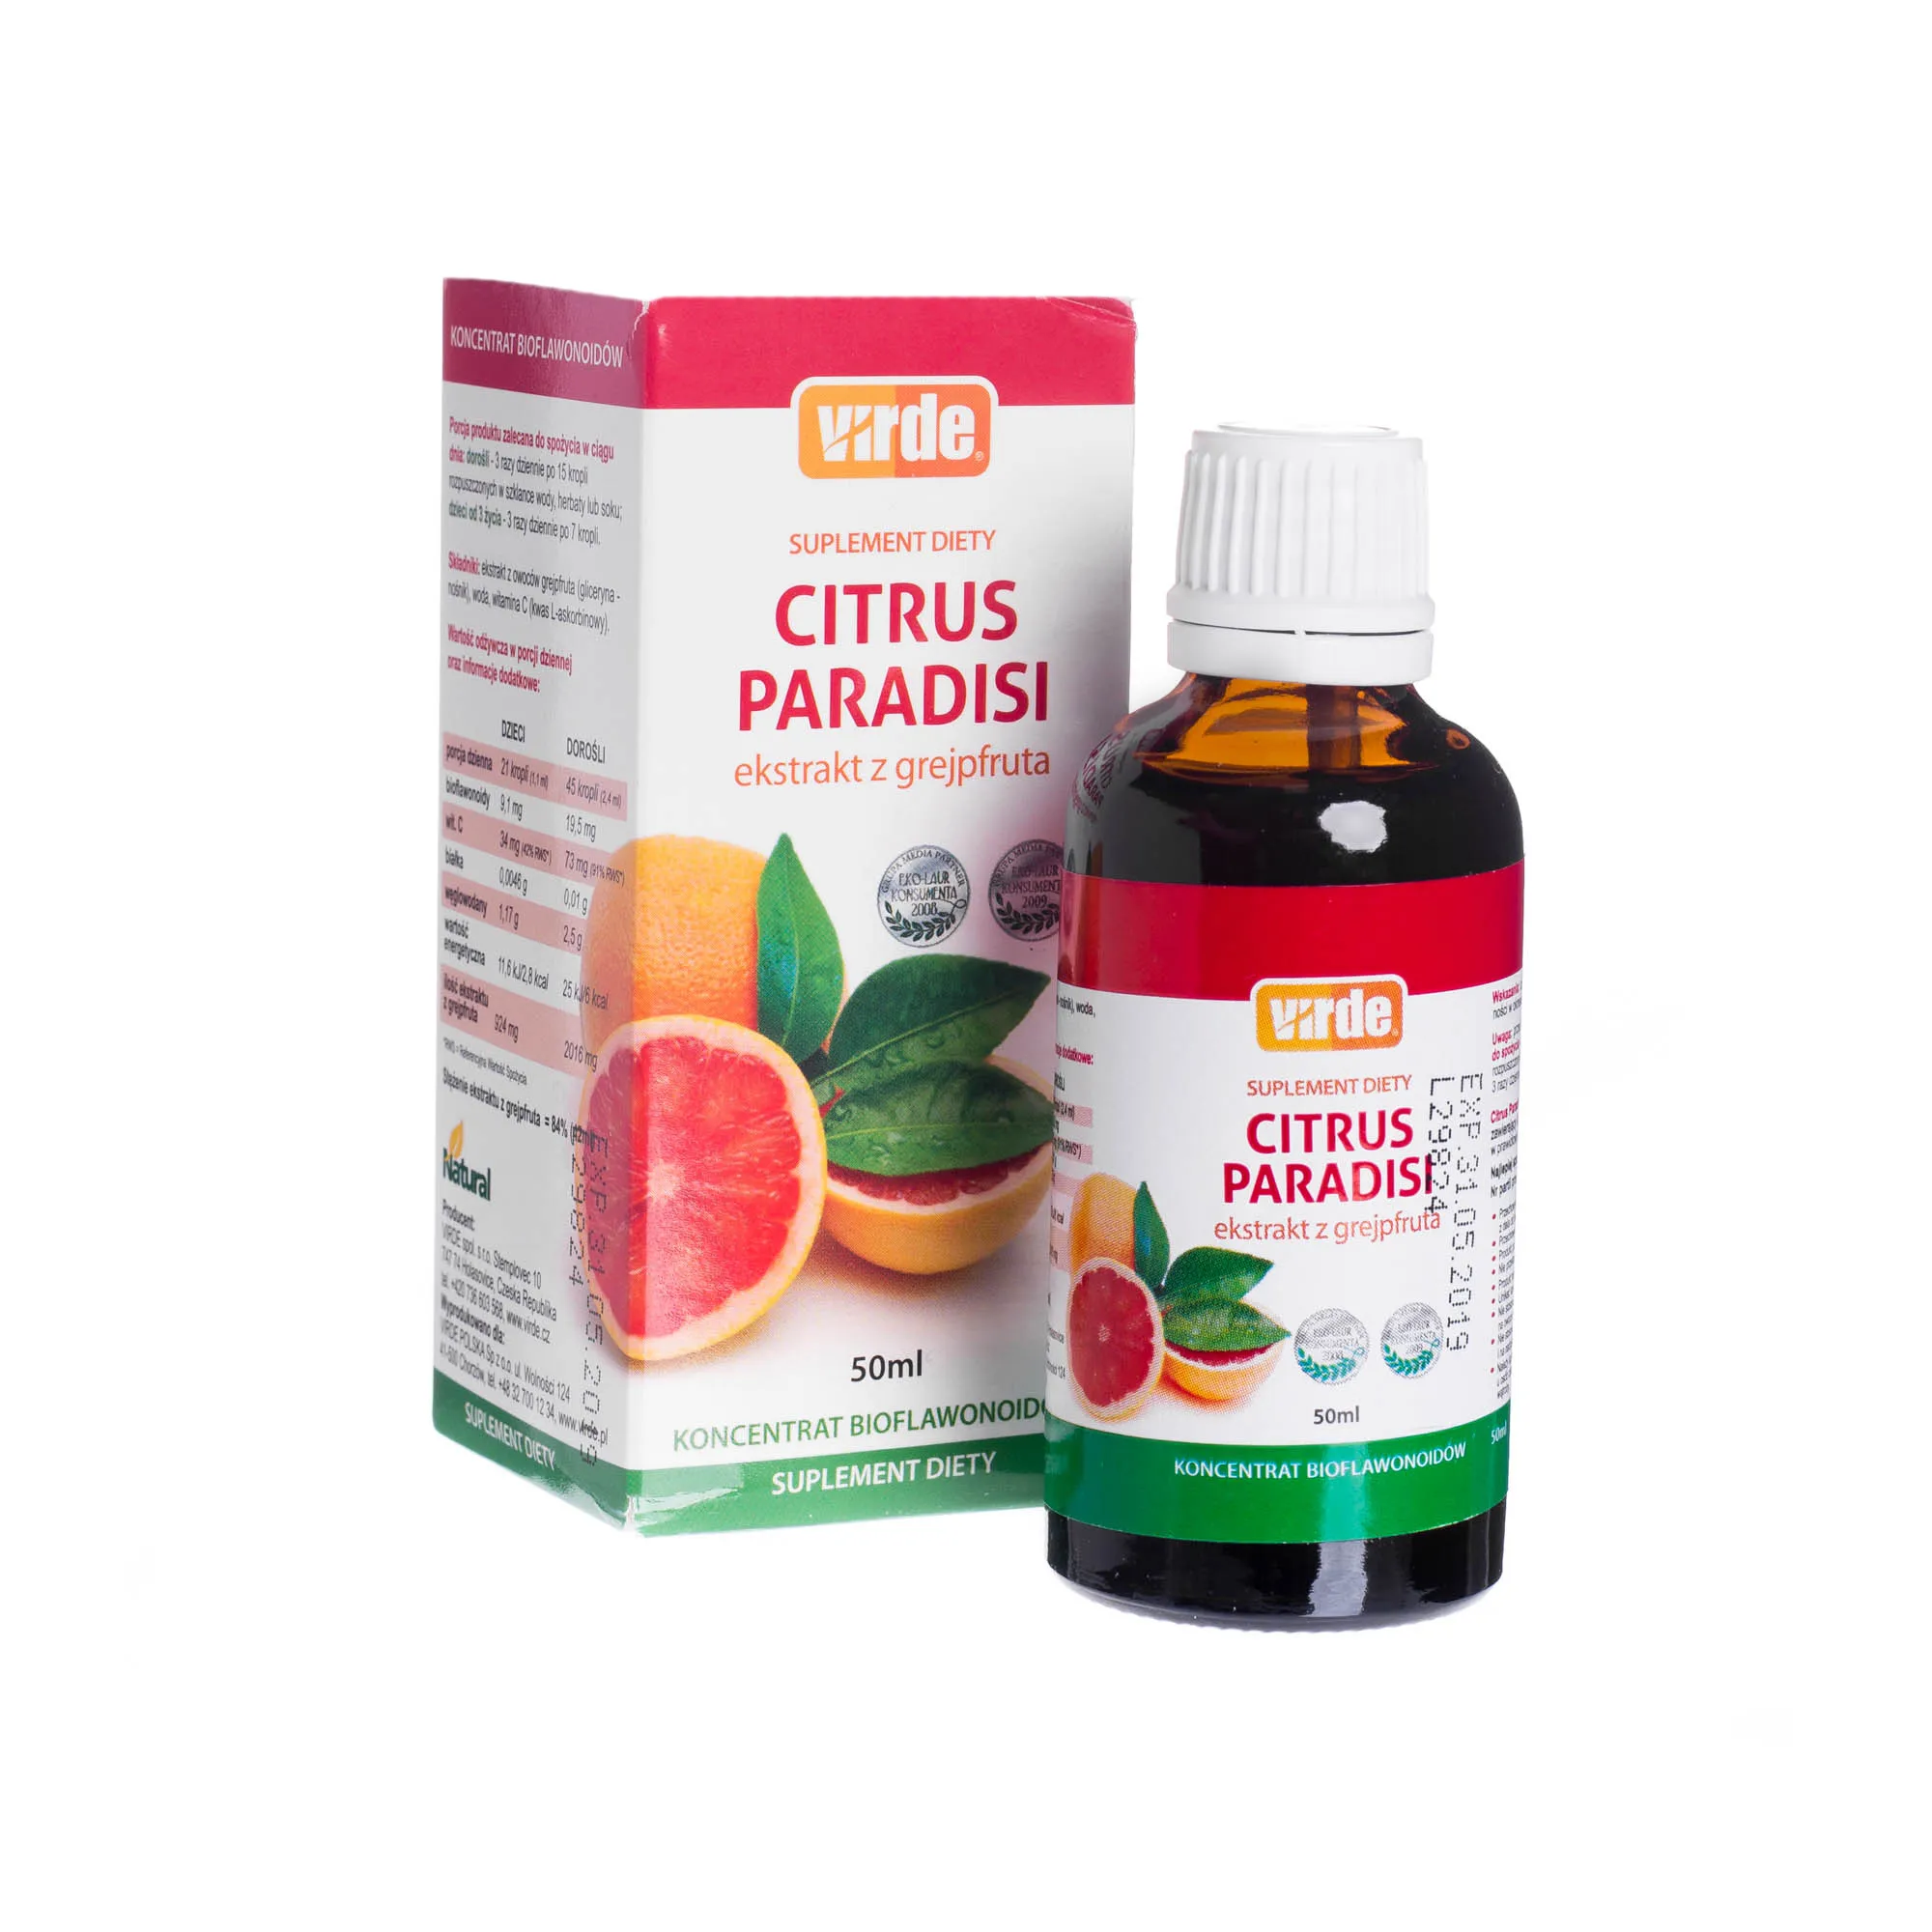 Citrus Paradisi, ekstrakt z grejpfruta uzupełniający dietę o bioflawonoidy i witaminę C, 50 ml 